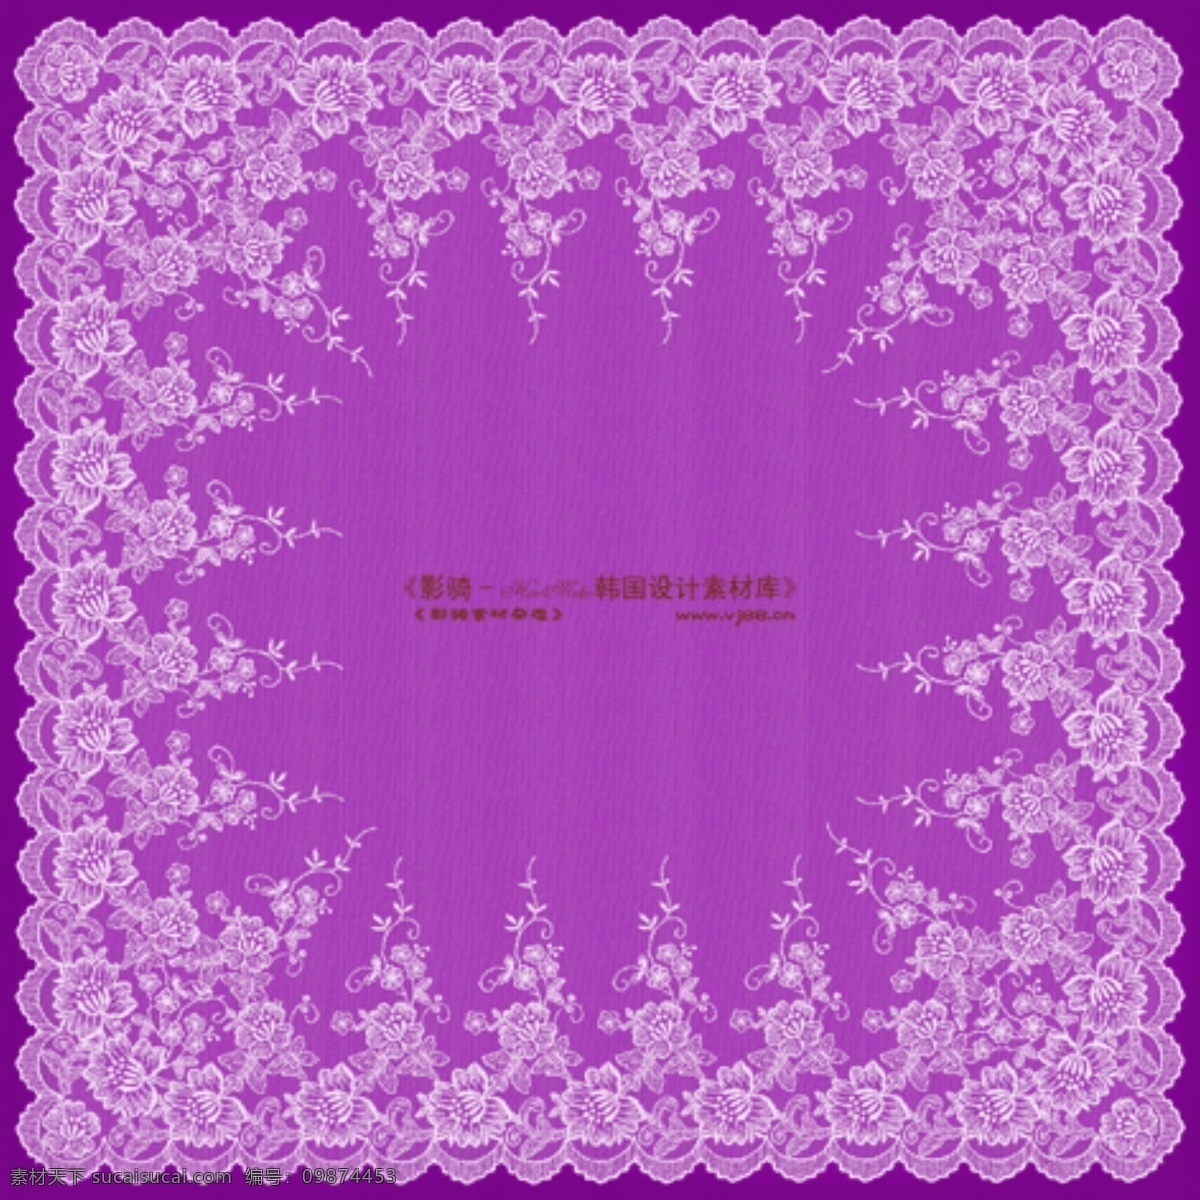 紫色 蕾丝 花边 背景 设计素材 psd源文件